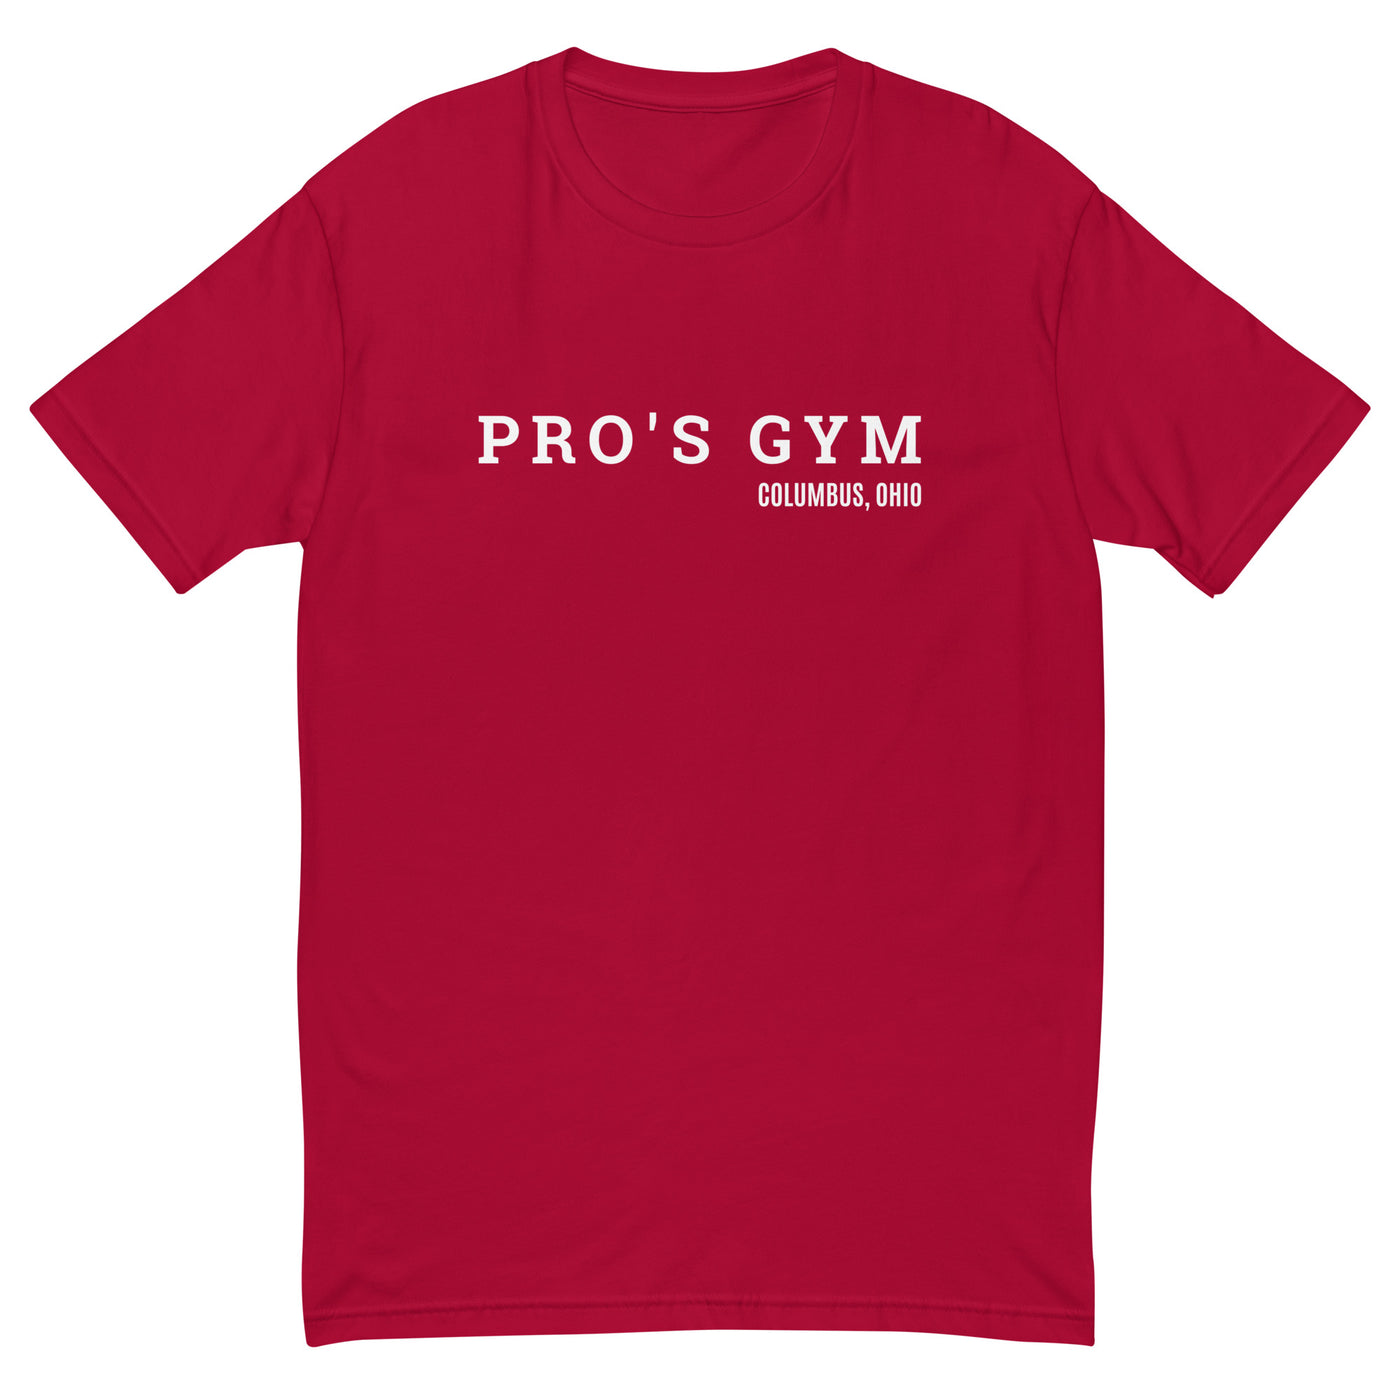 Pro's gym Next Level Unisex T-Shirt